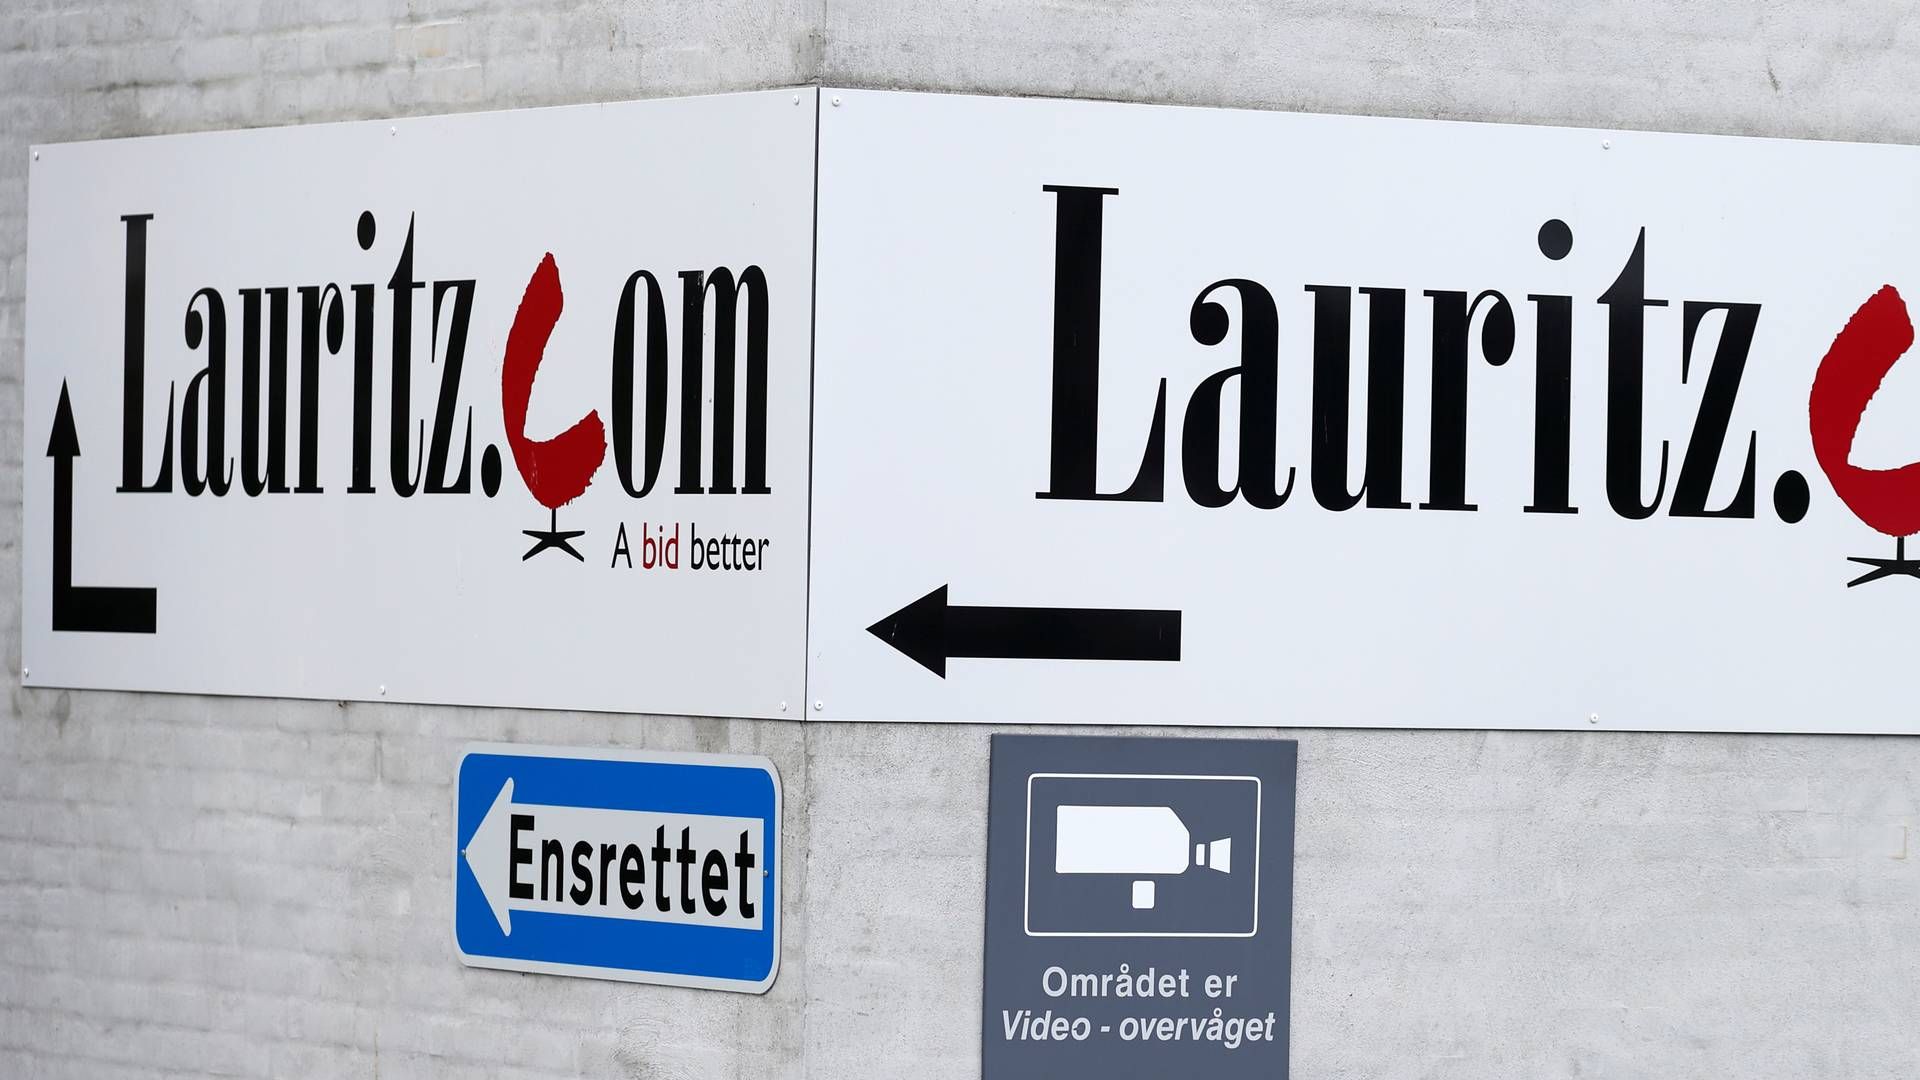 Blandt julis konkurser var Lauritz.com. | Foto: Jens Dresling